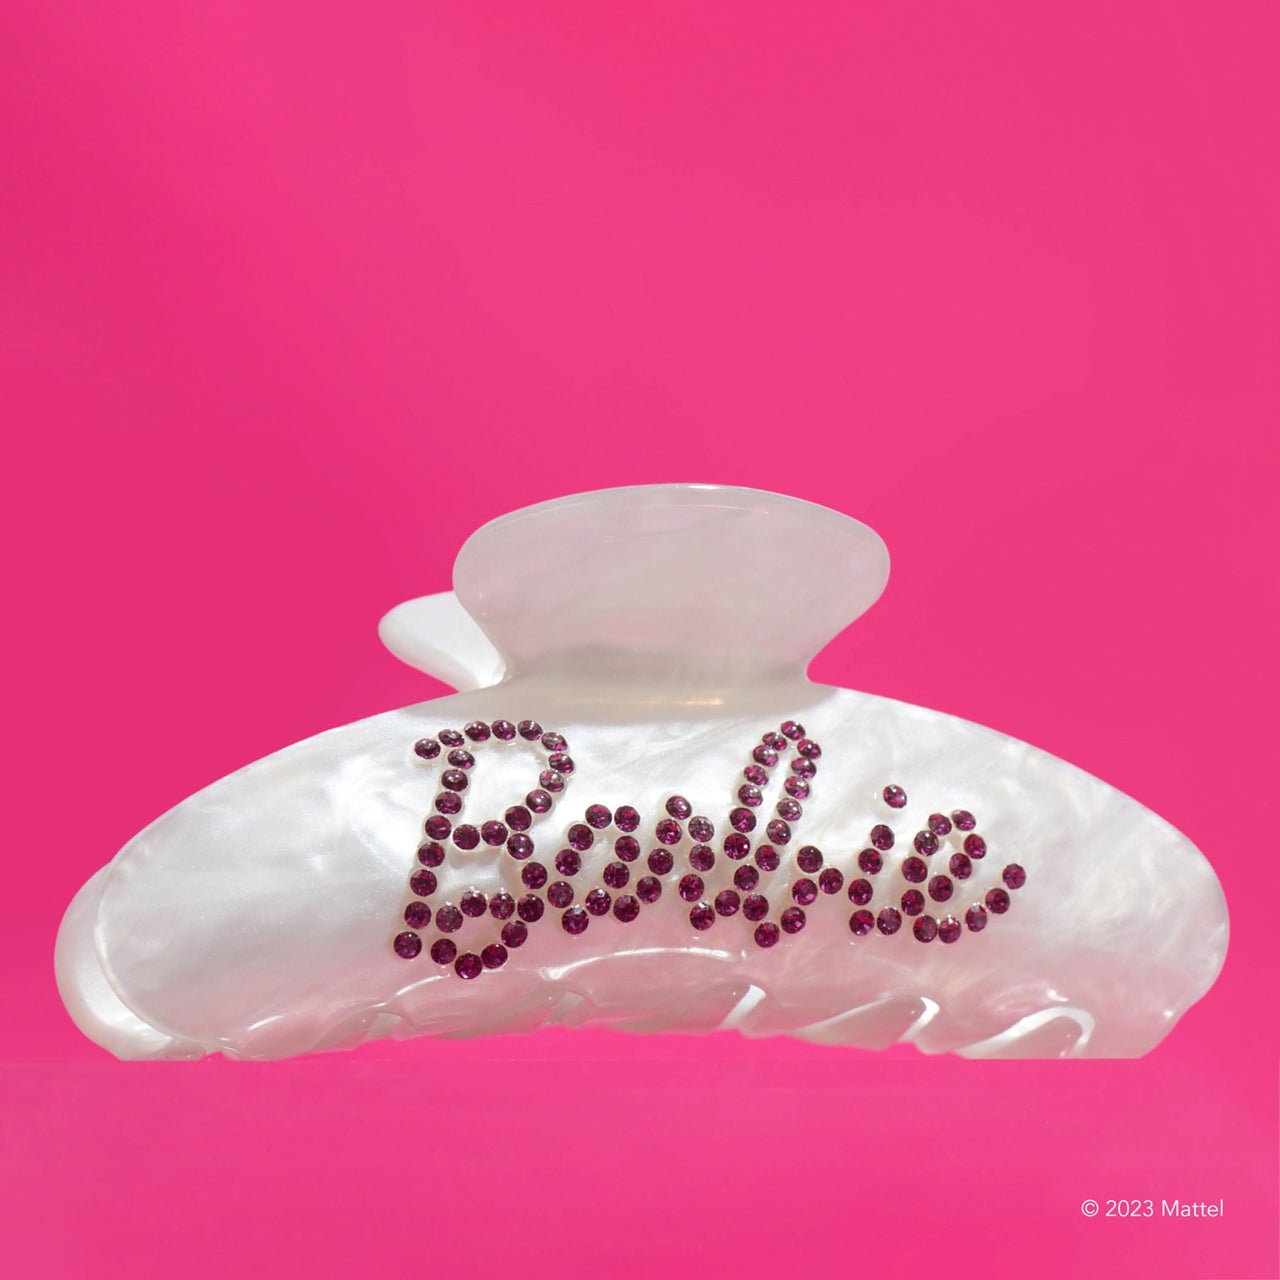 Barbie™ x Conjunto de colecionador Kitsch King